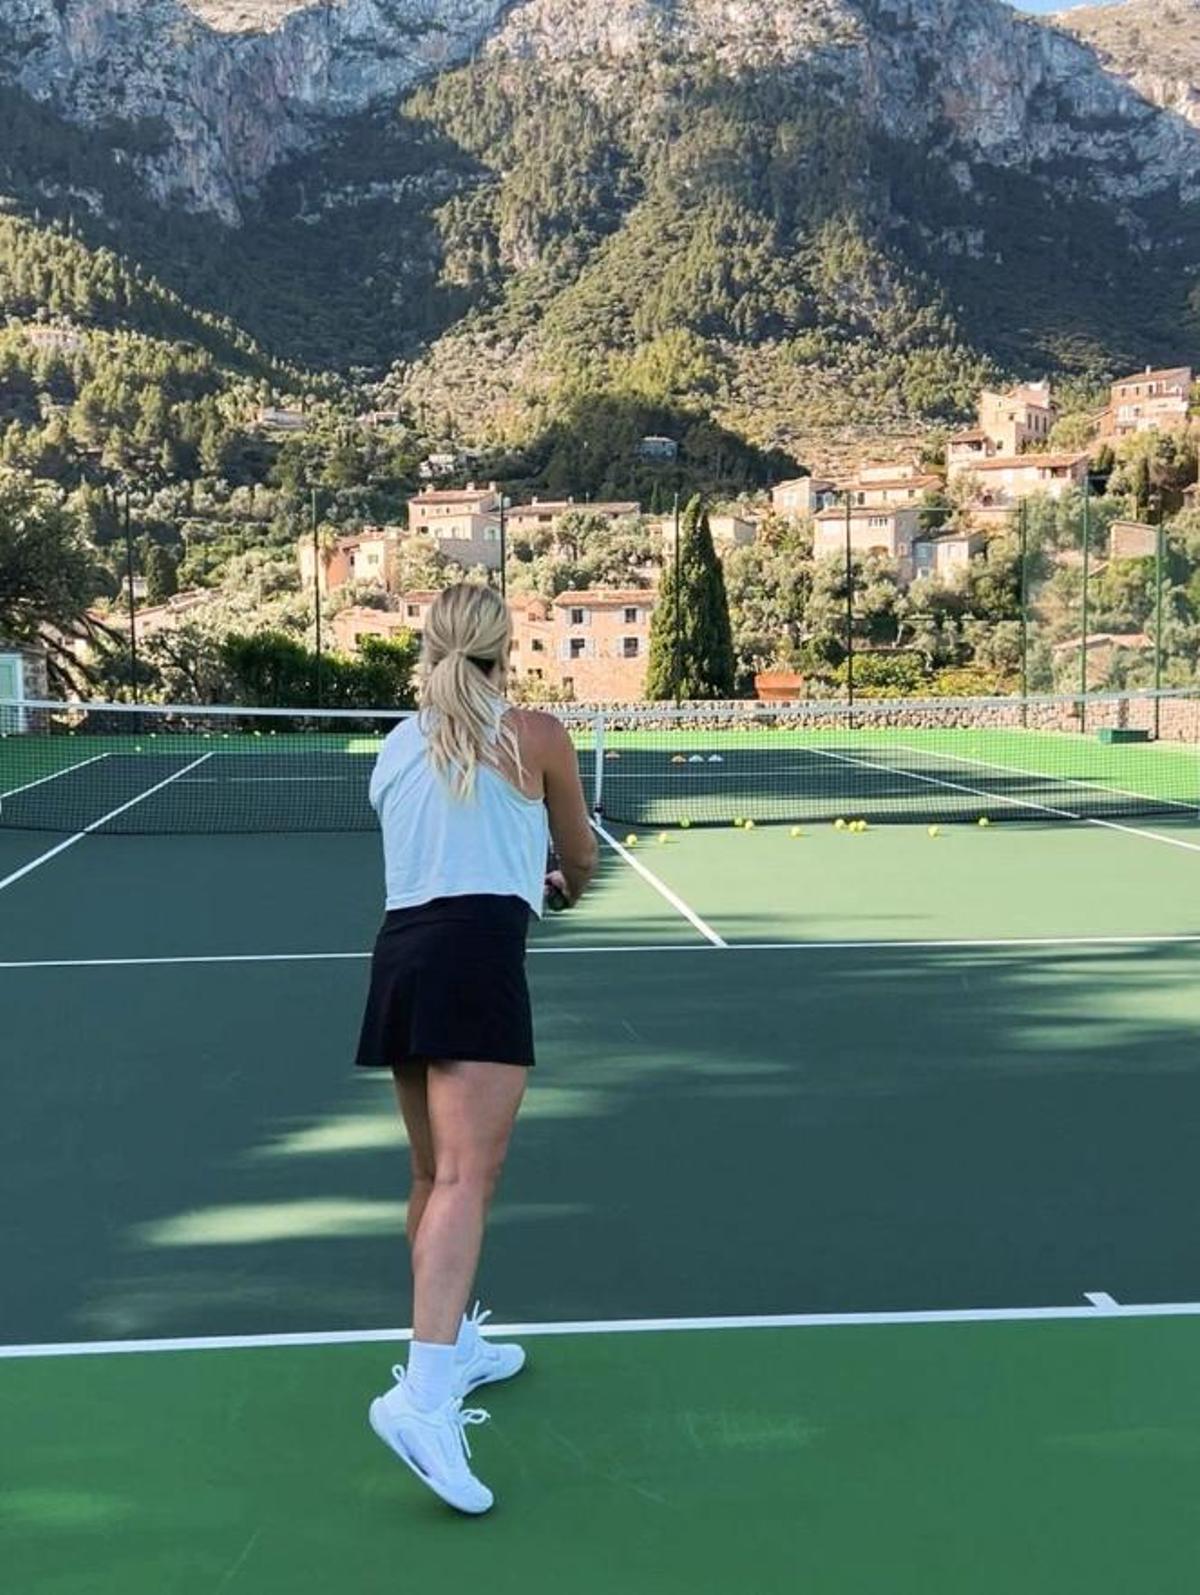 Shea en una de las clases de tenis en Mallorca.